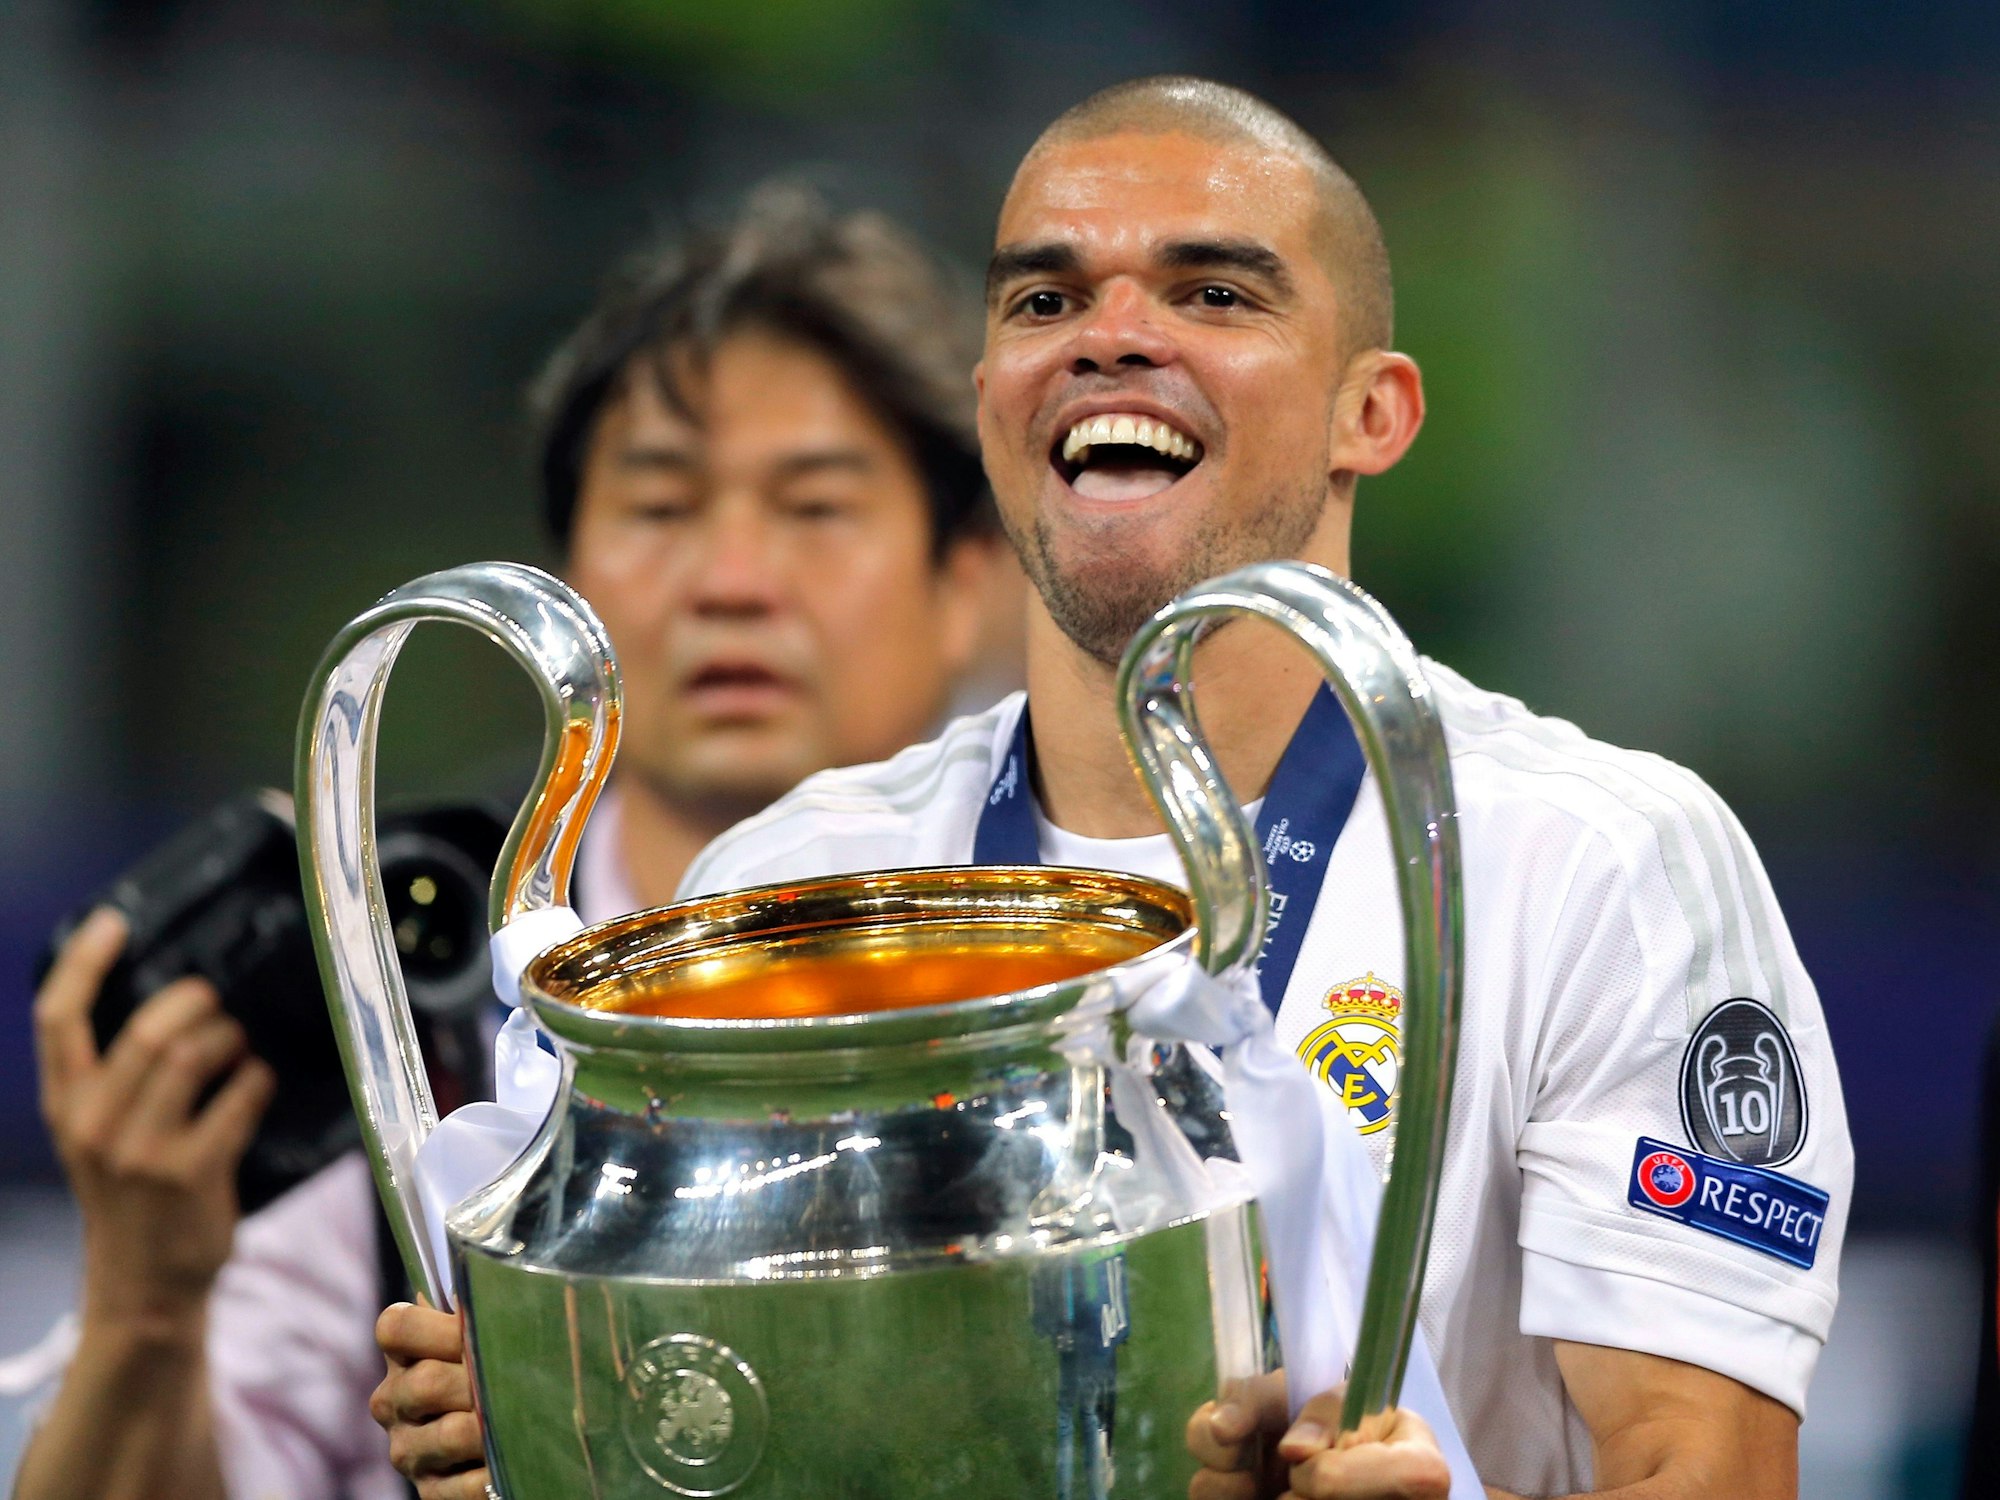 Pepe von Real Madrid beim Jubeln mit dem Pokal nach dem Sieg im Finale der UEFA Champions League gegen Atletico Madrid im Giuseppe-Meazza-Stadion in Mailand am 28. Mai 2016.